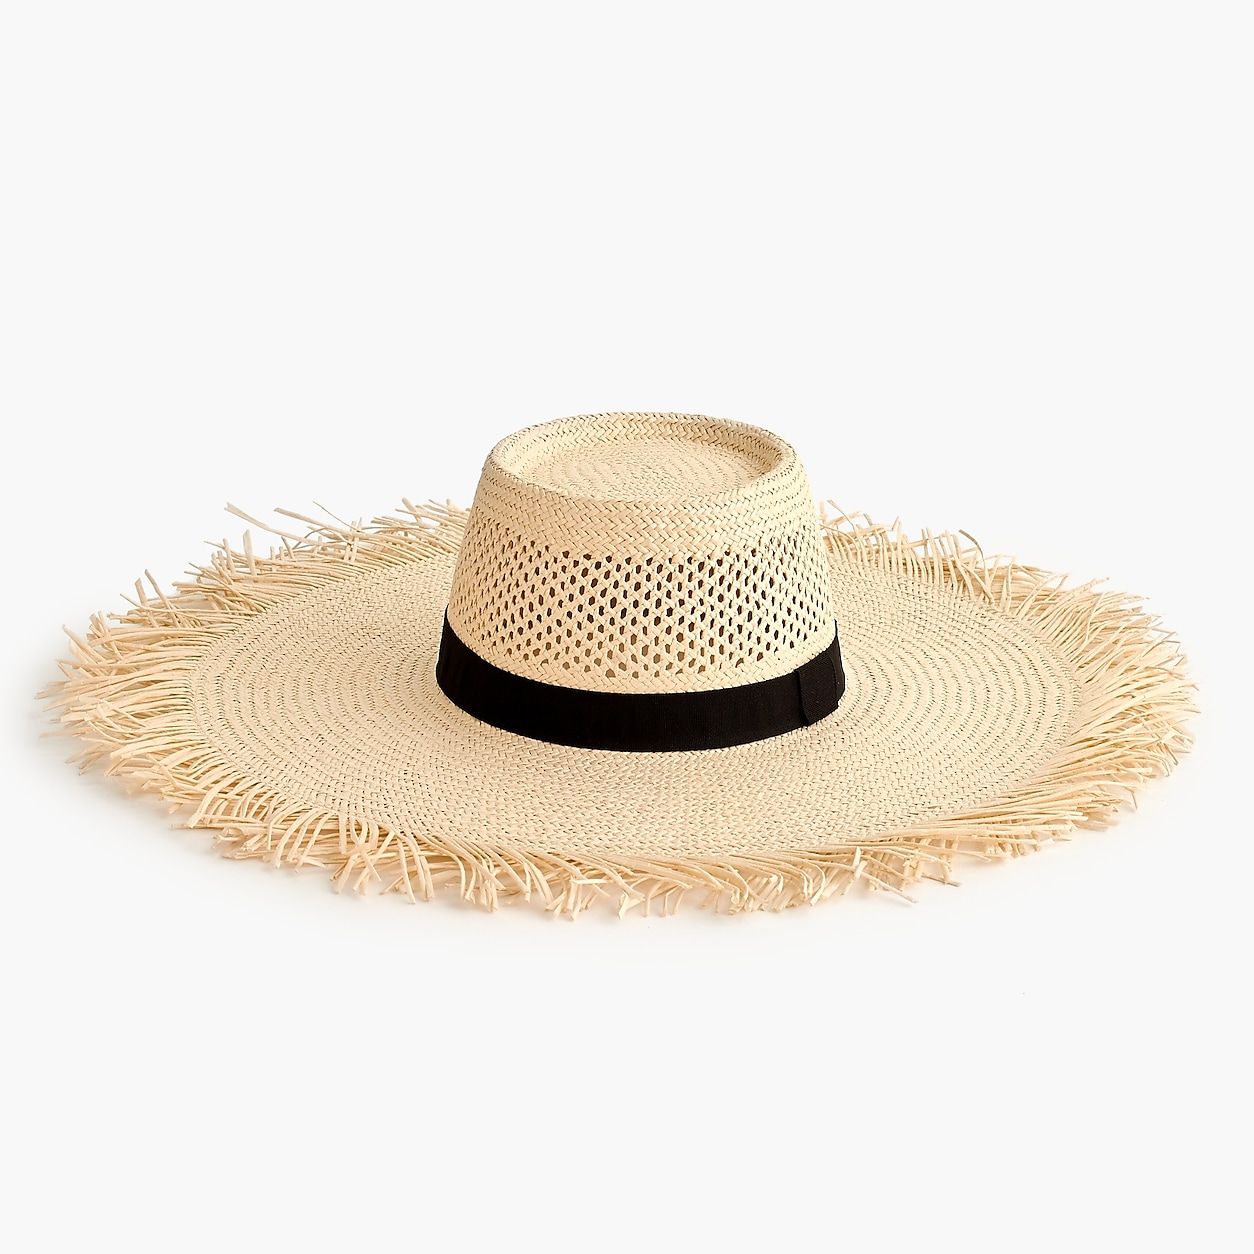 Wide brim straw hat with fringe | J.Crew US